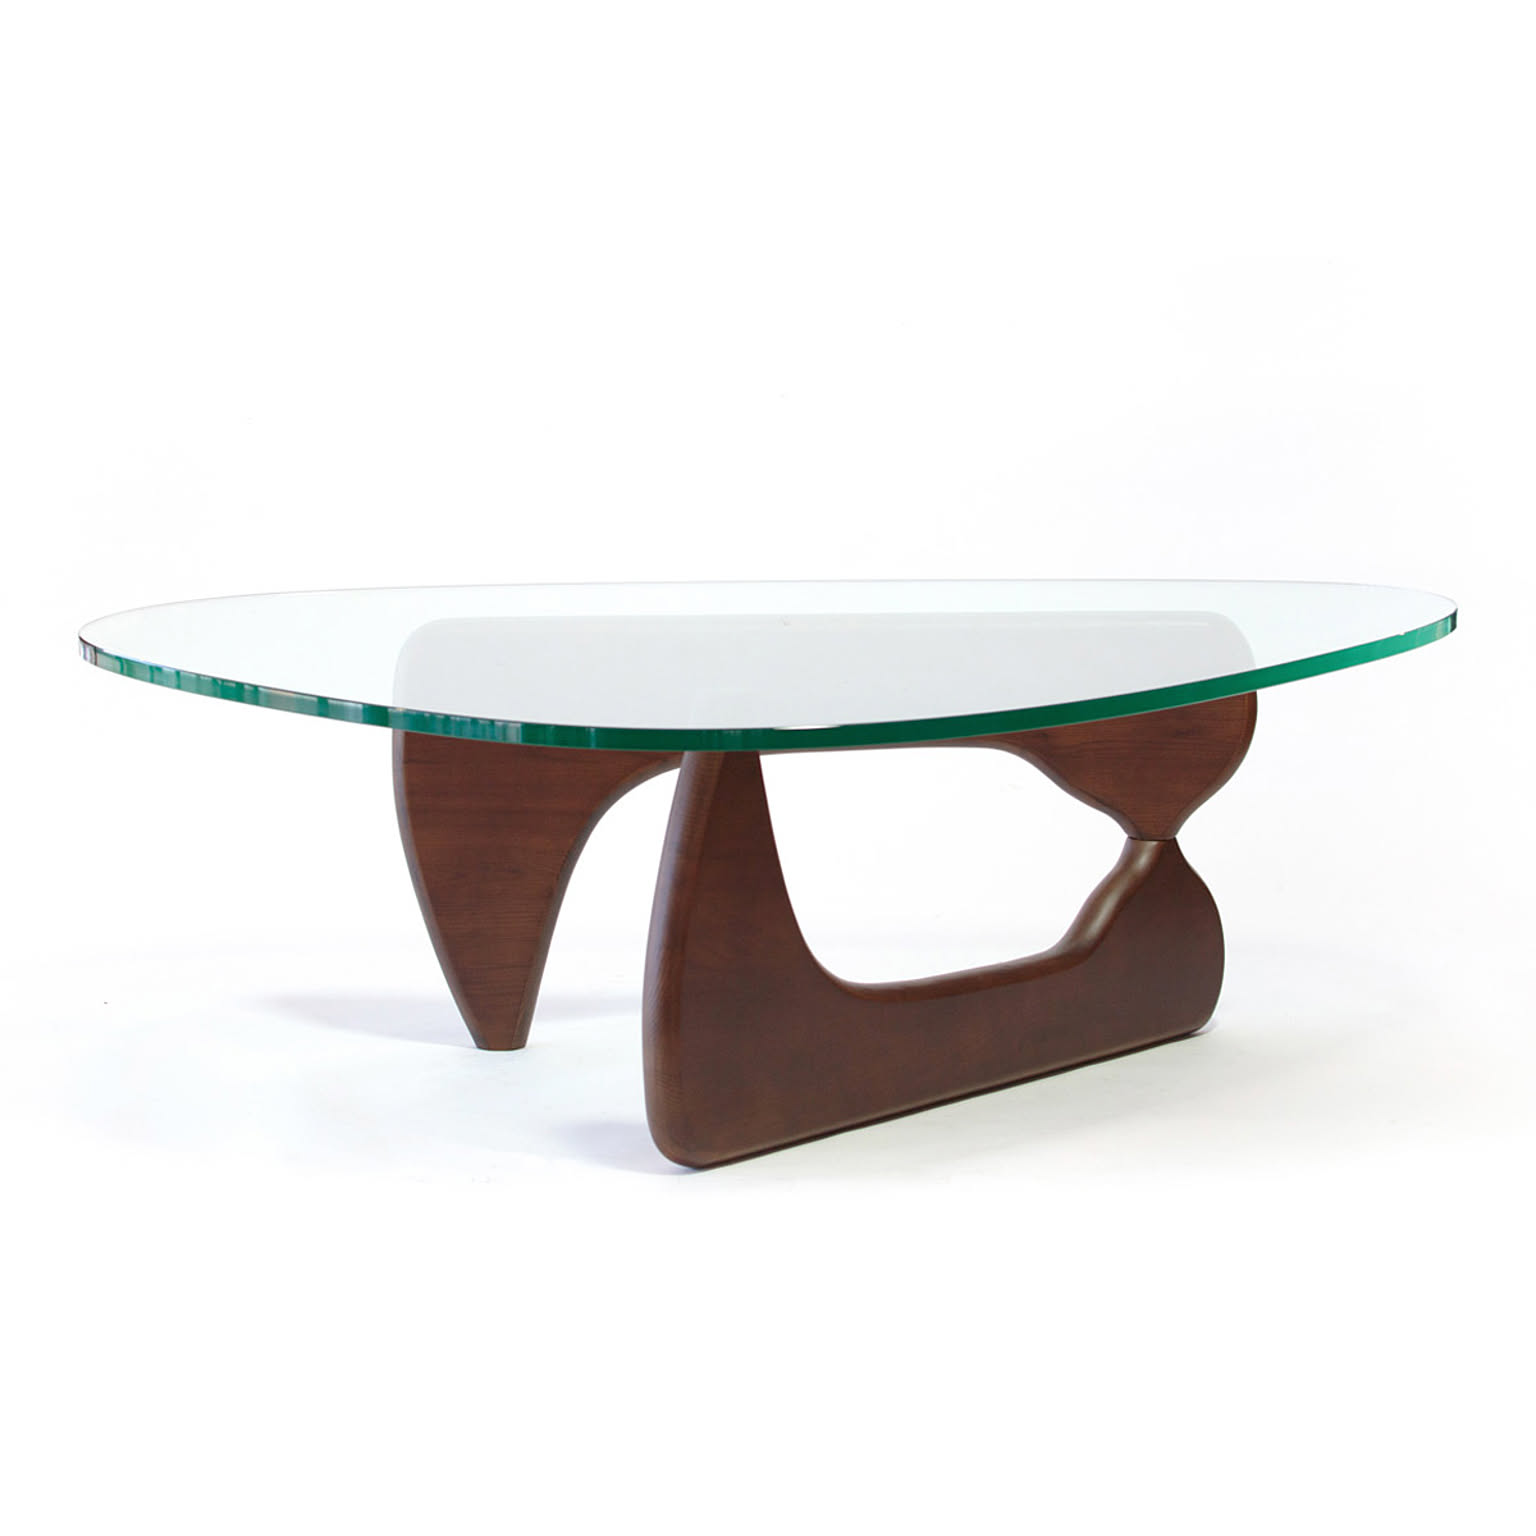 ノグチテーブル ガラステーブル ローテーブル センターテーブル ノグチイサムデザイン おしゃれテーブル デザイナーズ